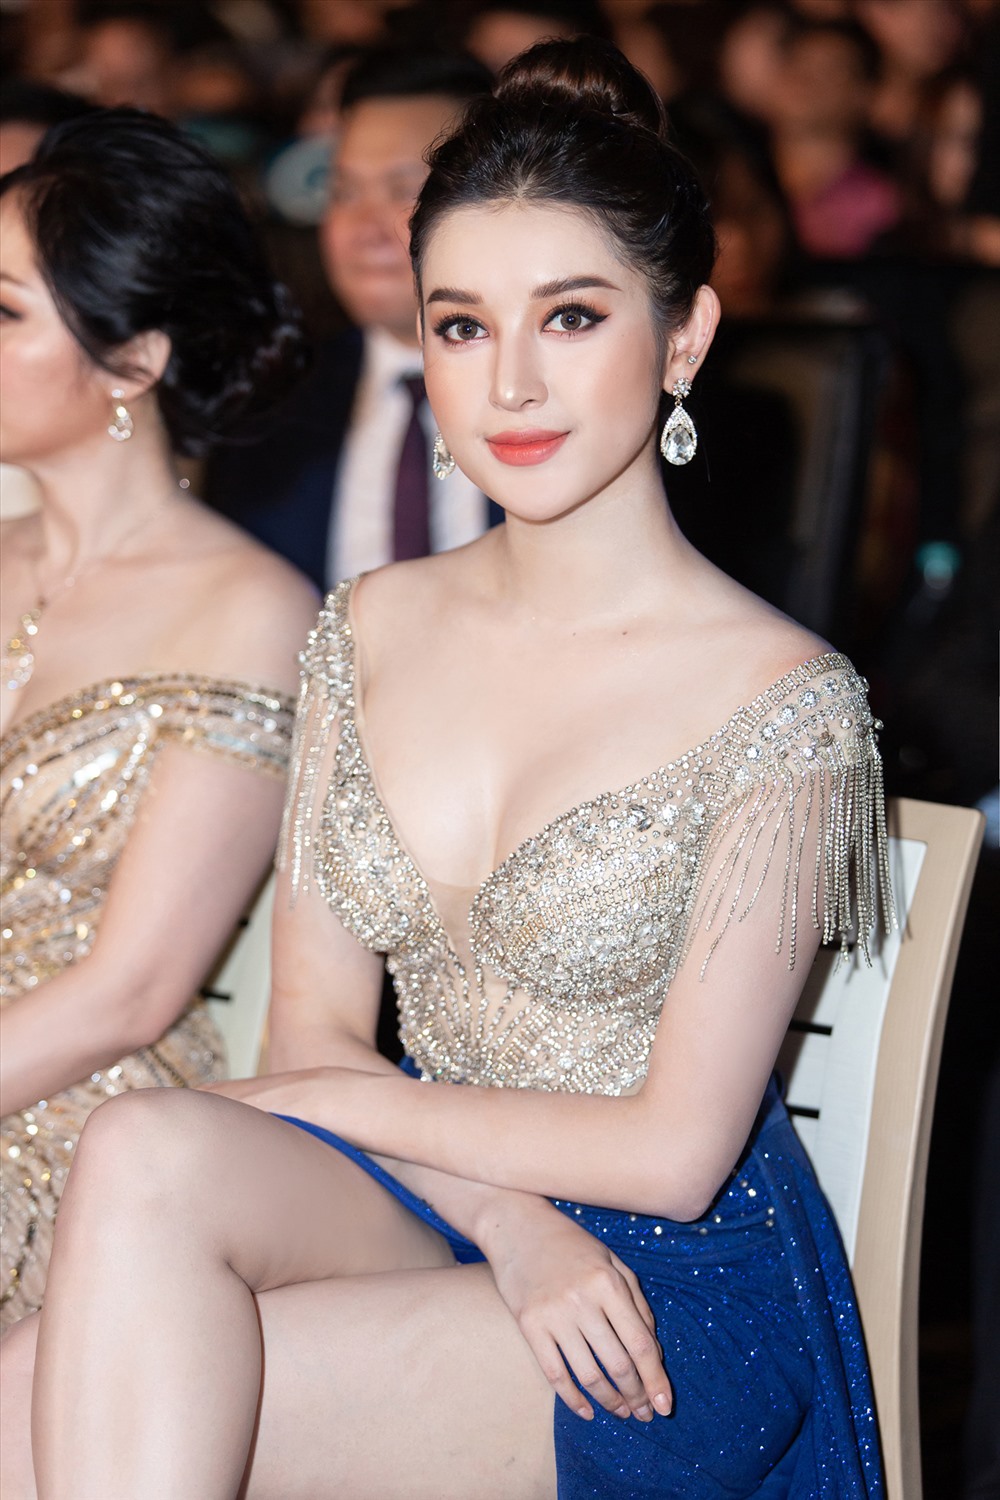 Người đẹp là khách mời trao dải băng đại diện cho Việt Nam tham dự cuộc thi Hoa hậu Liên lục địa“.